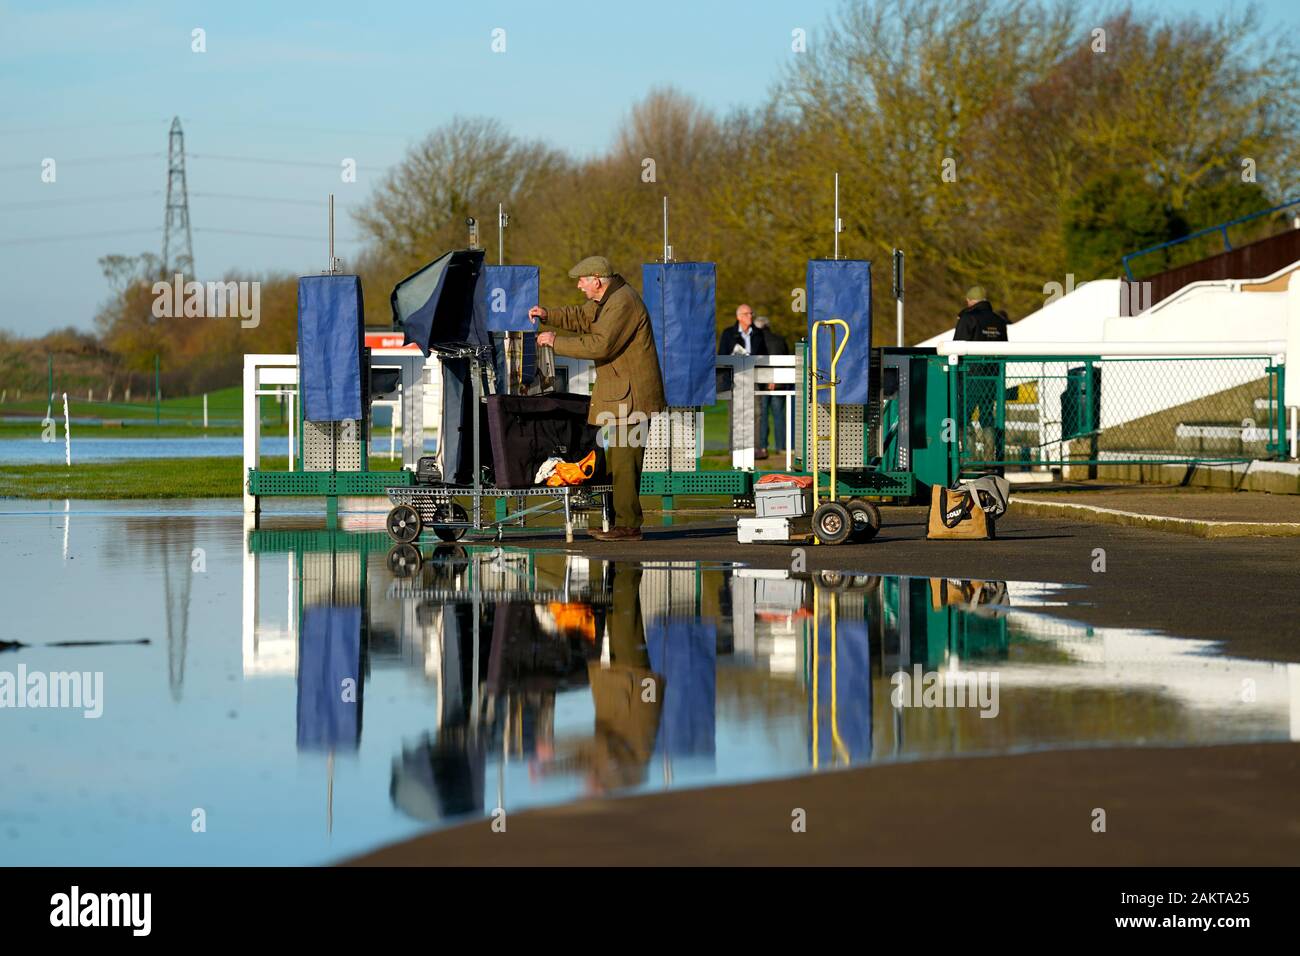 Corredores pack sus puestos como racing es cancelado debido a las inundaciones en Huntingdon Racecourse, Huntingdon. Foto de stock